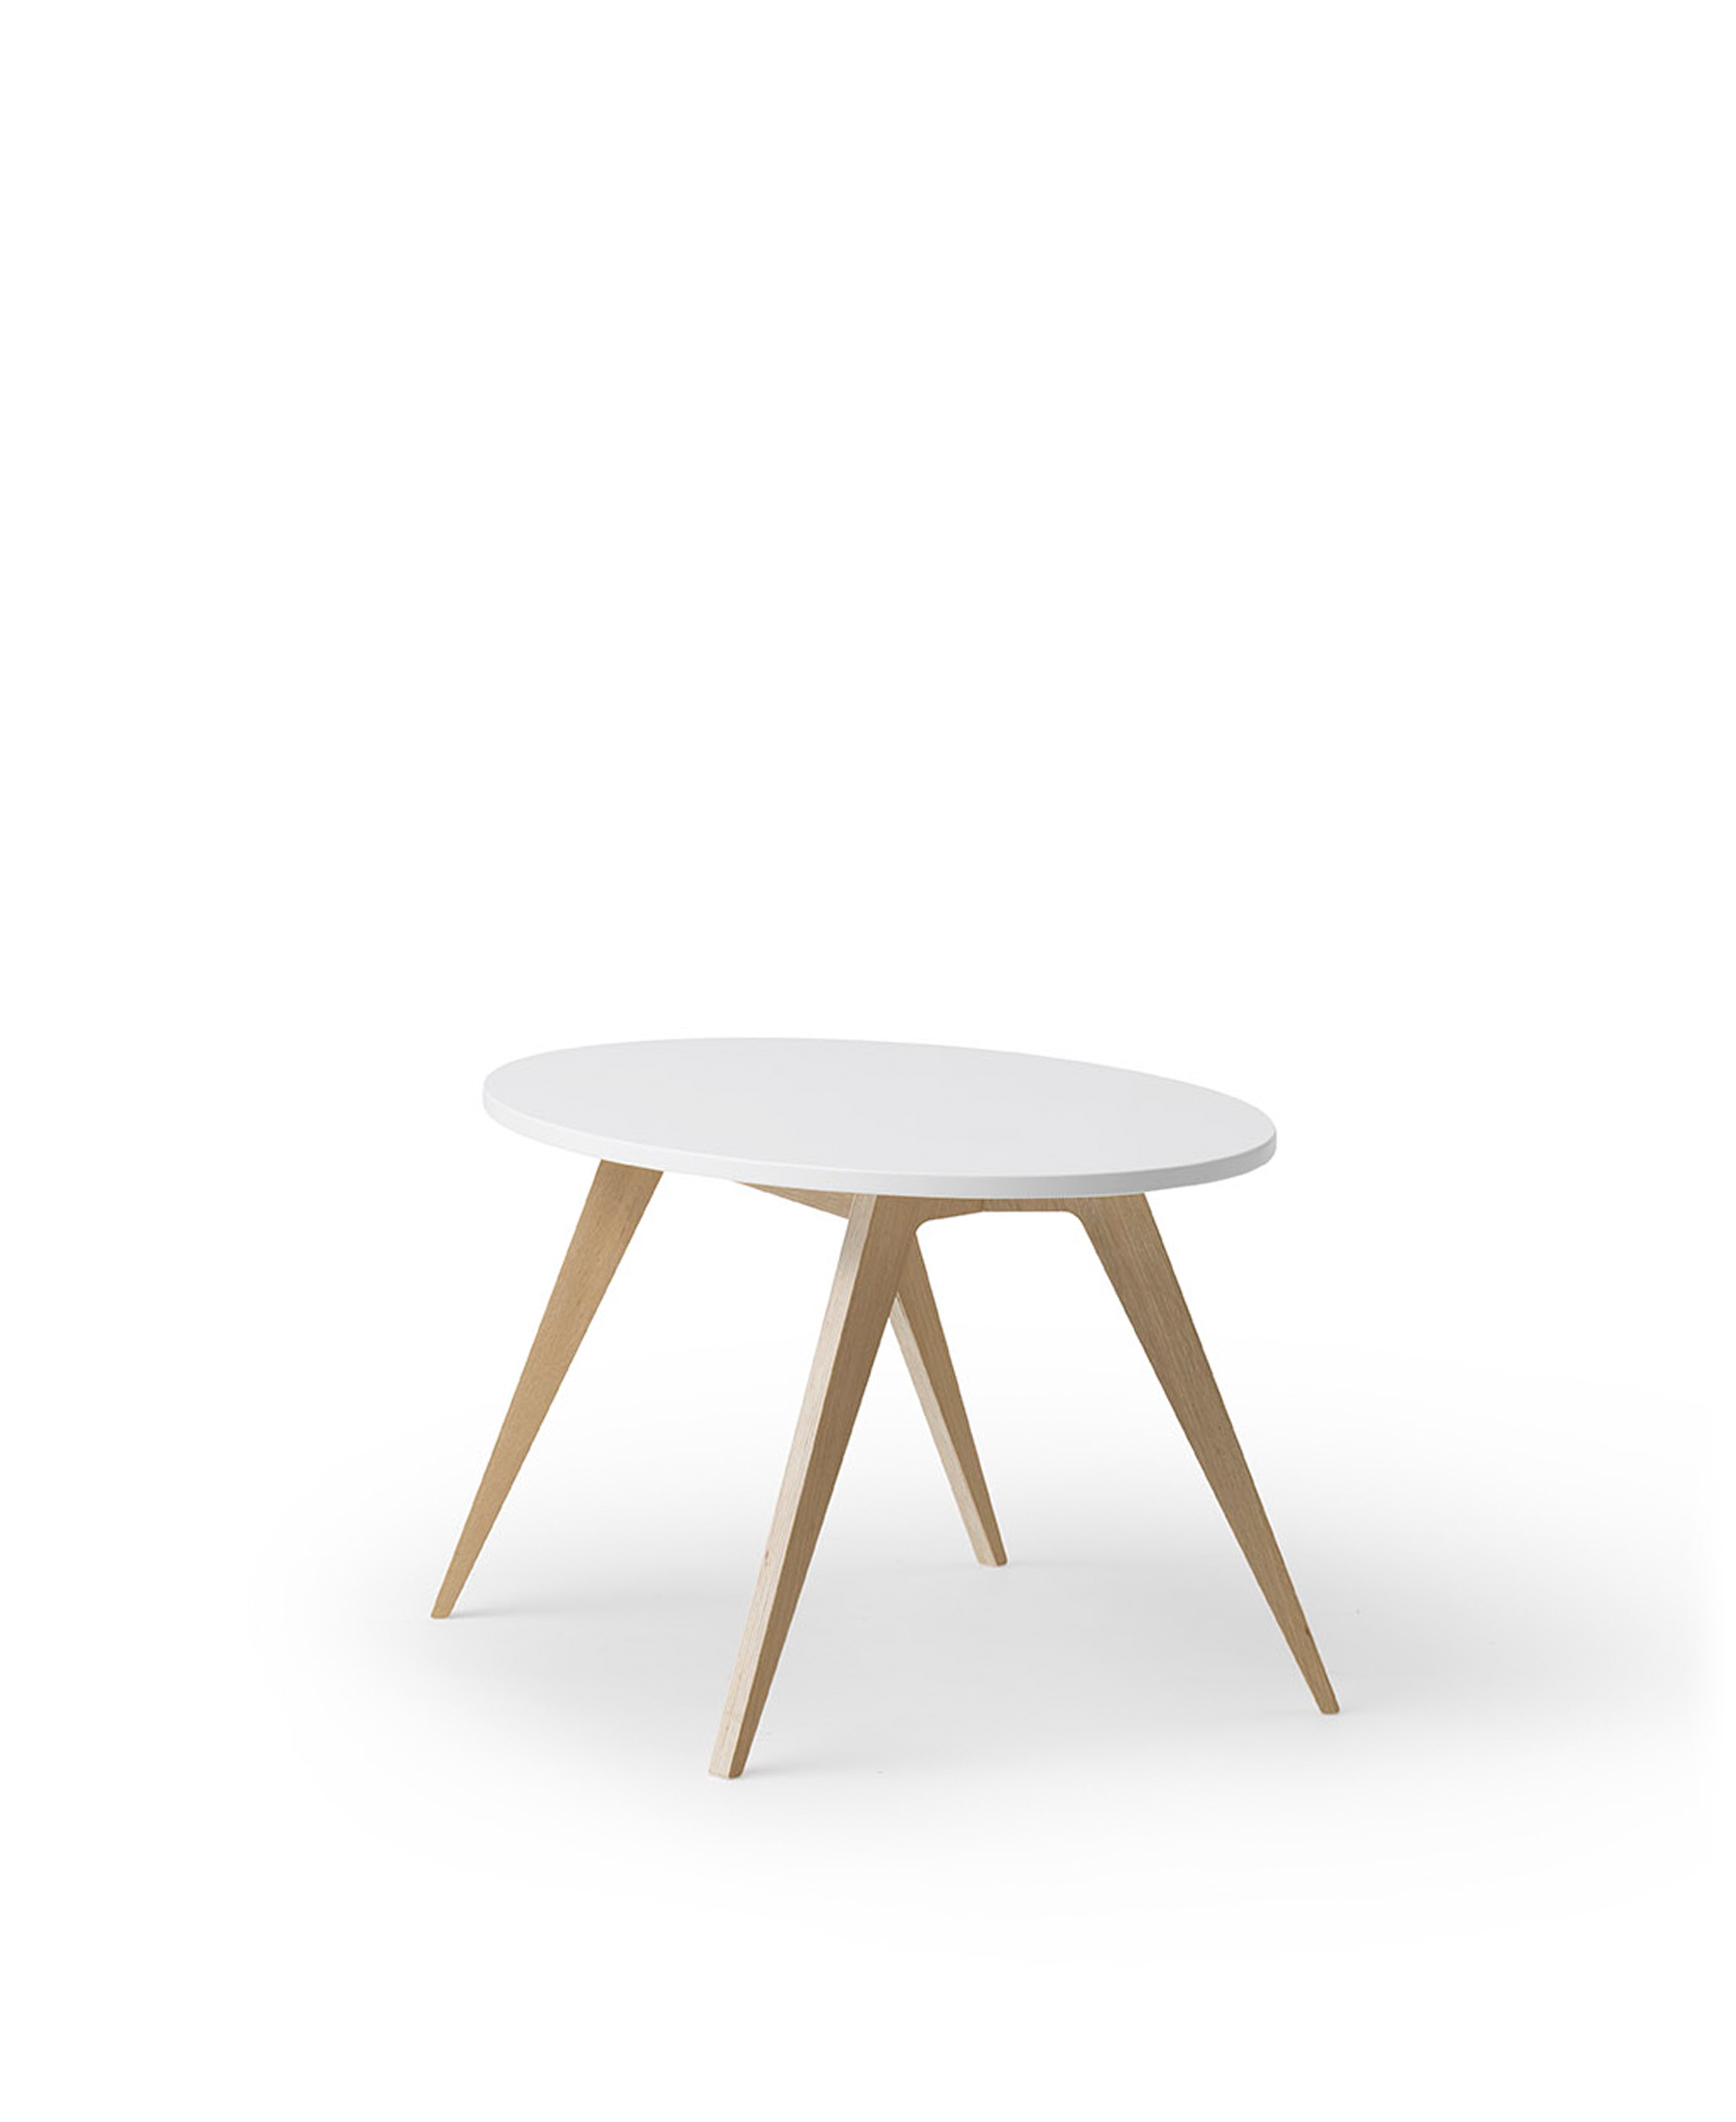 Wood PingPong table, white/oak